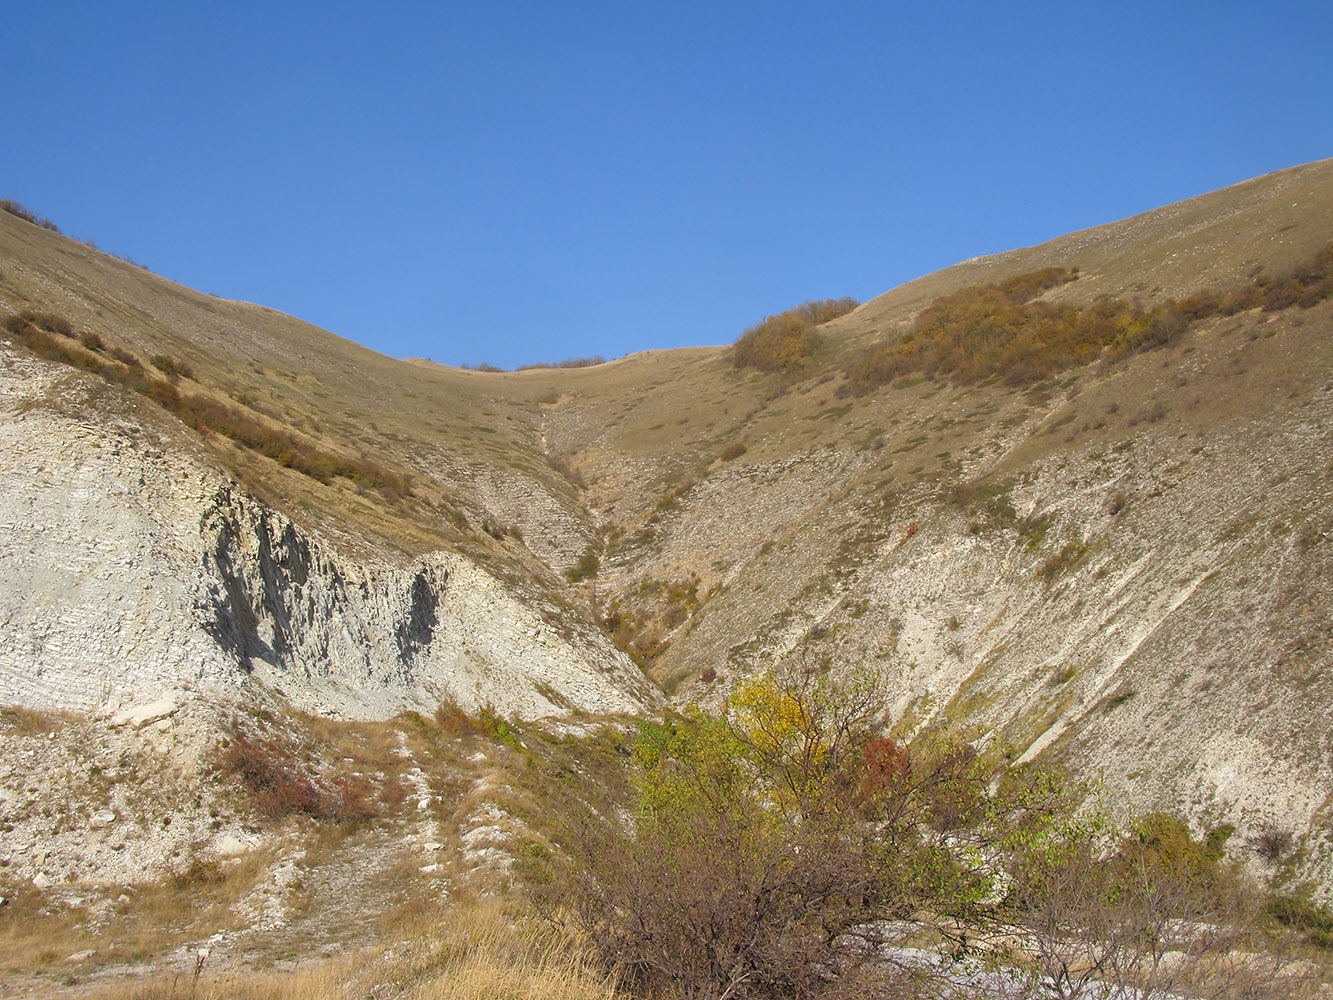 Истоки Мефодиевского ручья, image of landscape/habitat.